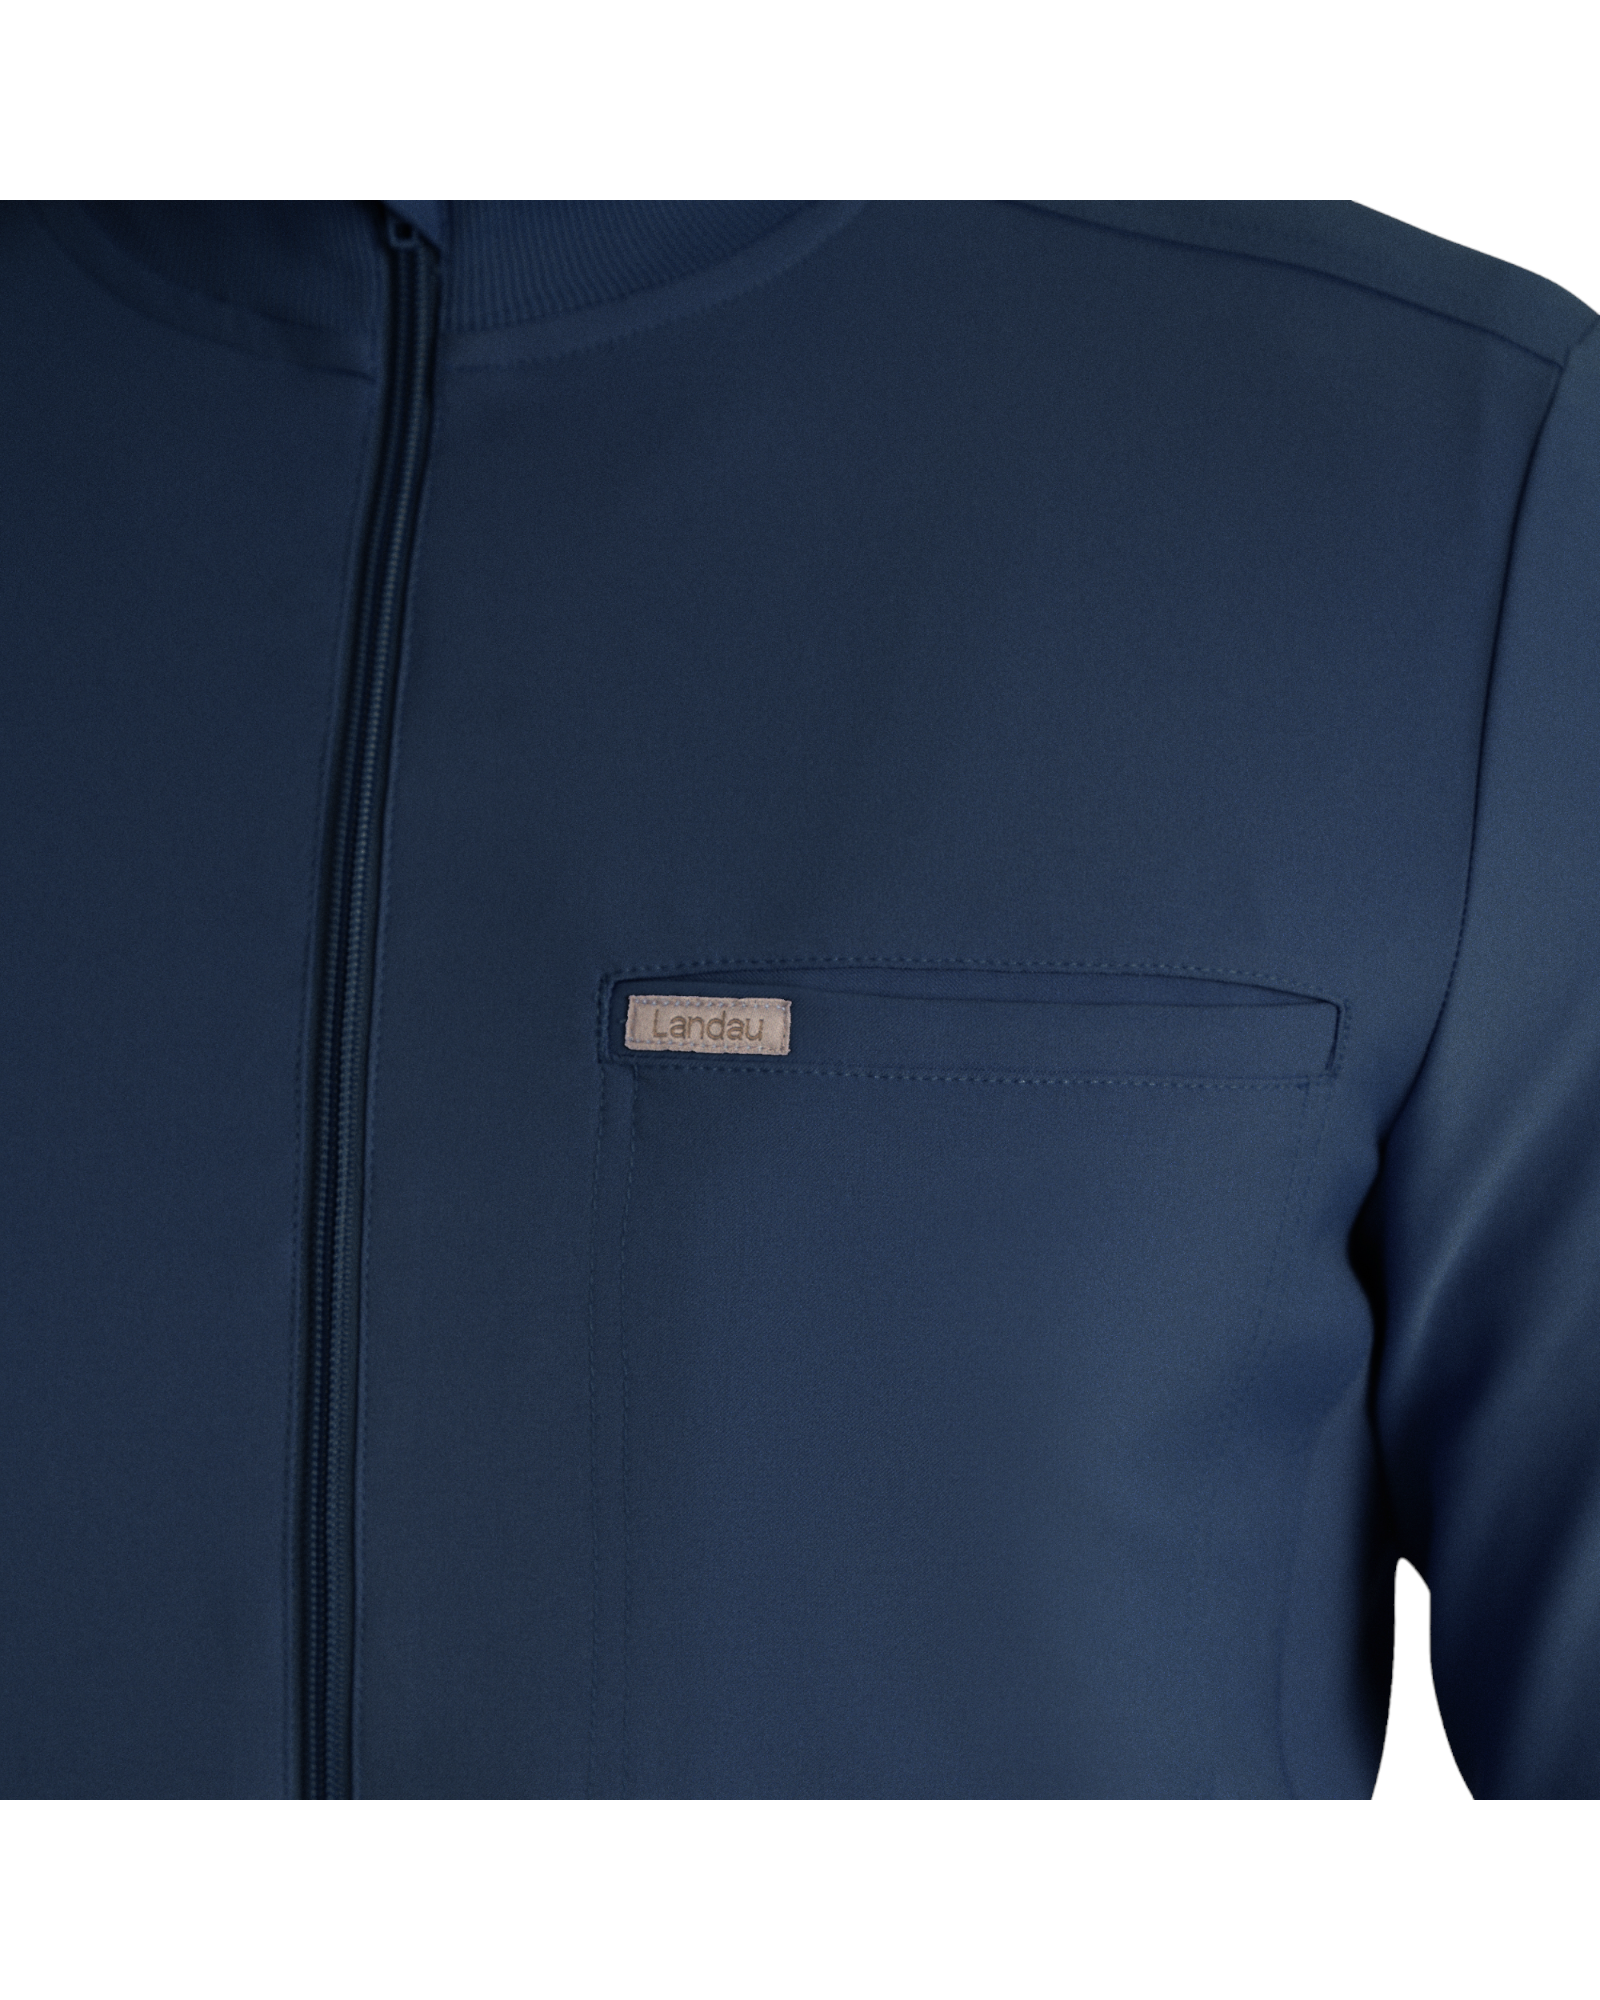 Vue poche poitrine de la veste de survêtement pour hommes à fermeture éclair Landau Forward #LJ703 couleur Marine